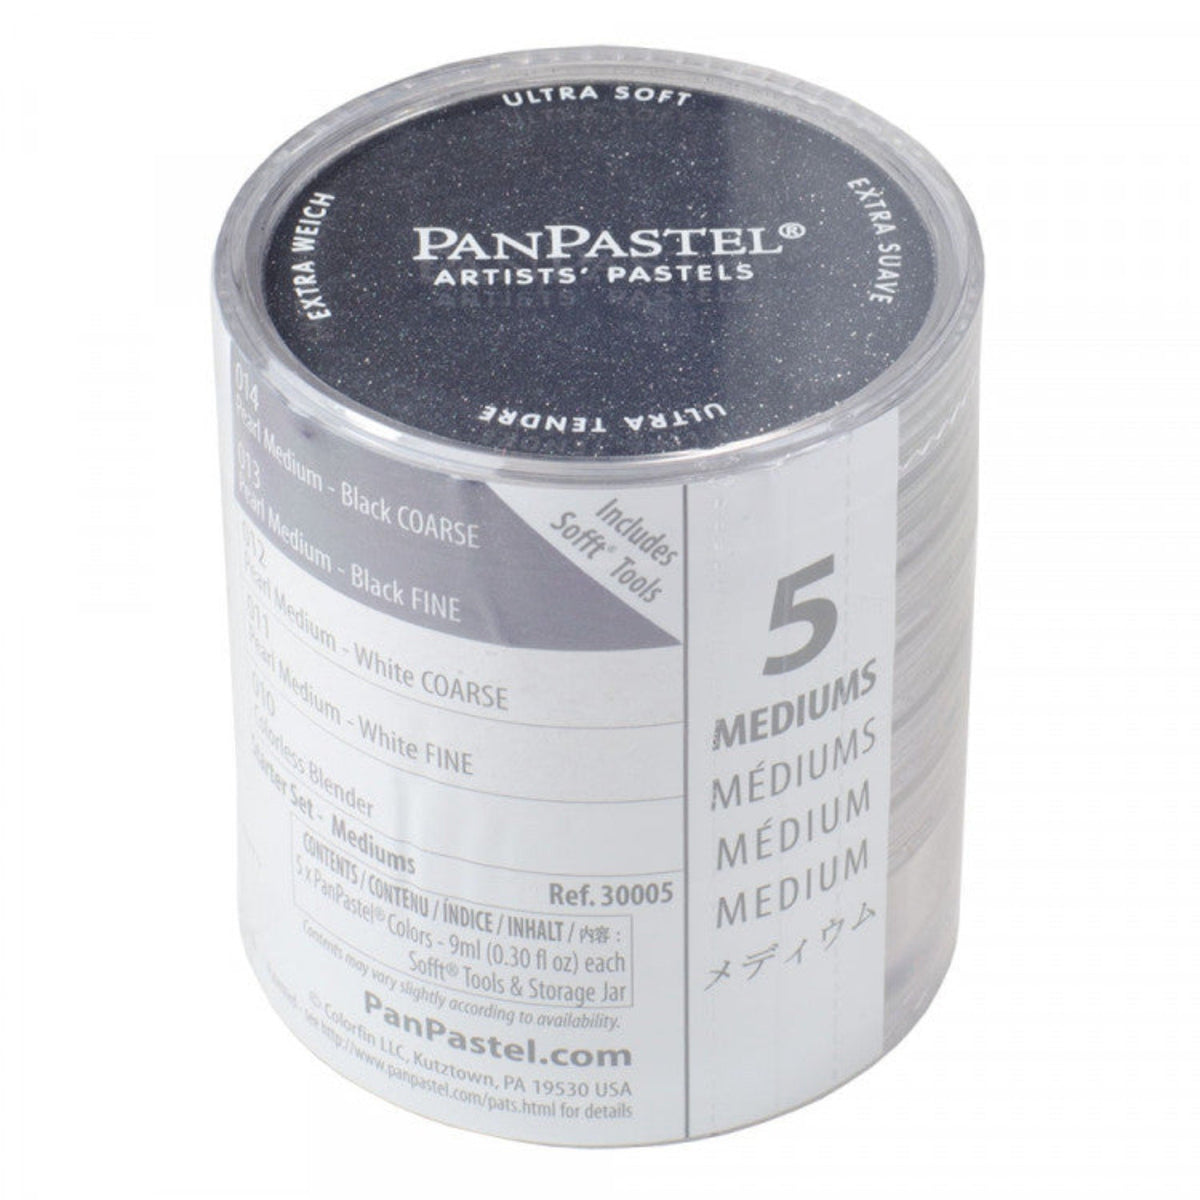 Pan Pastel Mediums - Set of 5